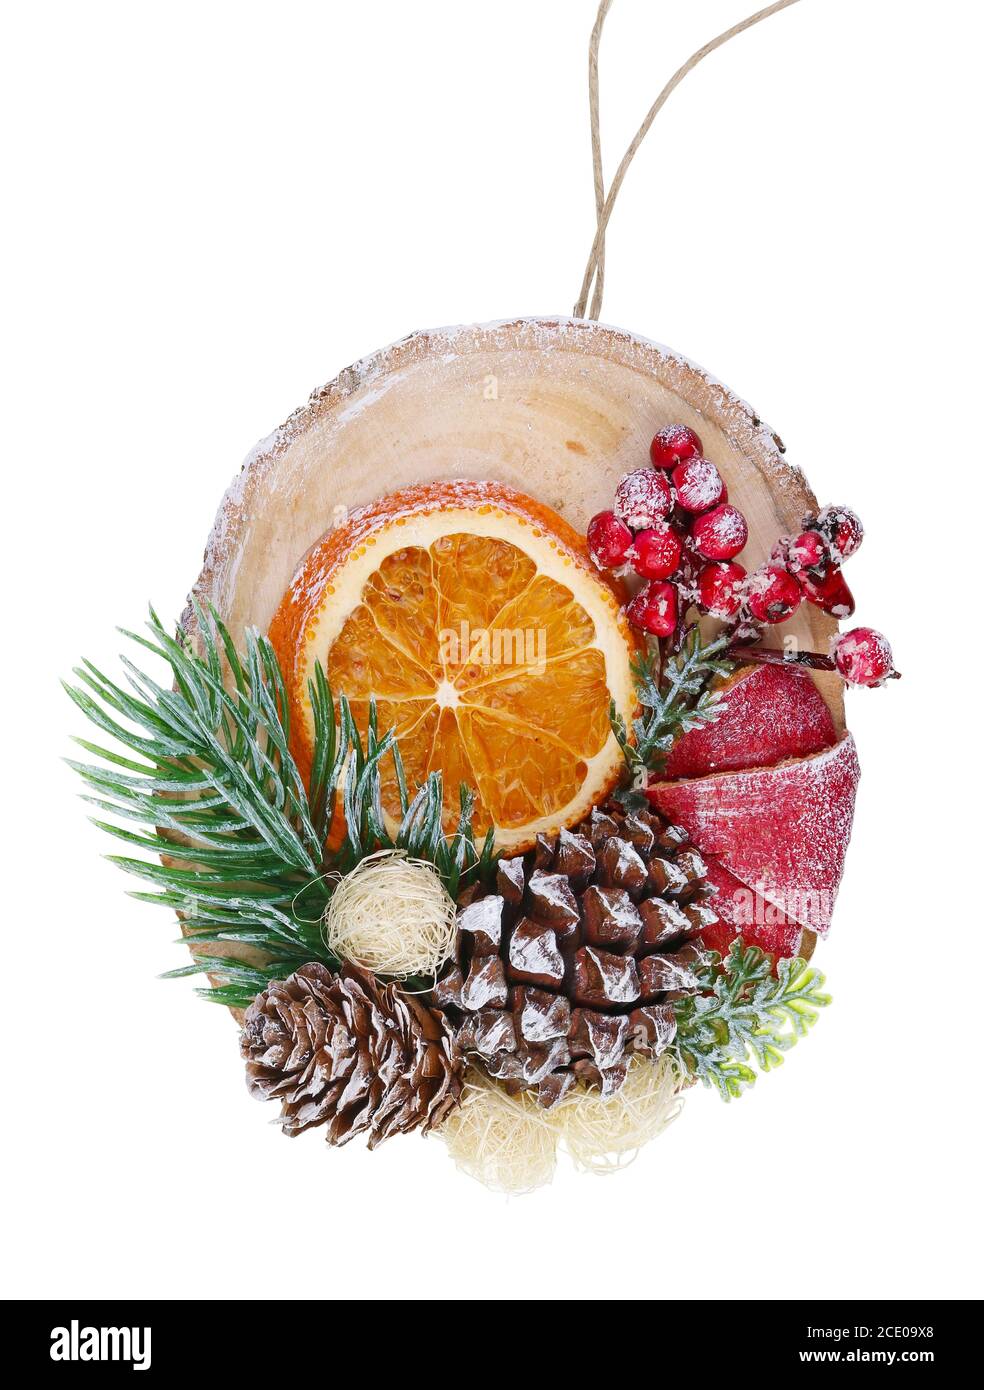 Abete giocattolo casereccio di Natale in stile rustico coni di bacche rosse e macro isolata di fetta di arancia secca Foto Stock